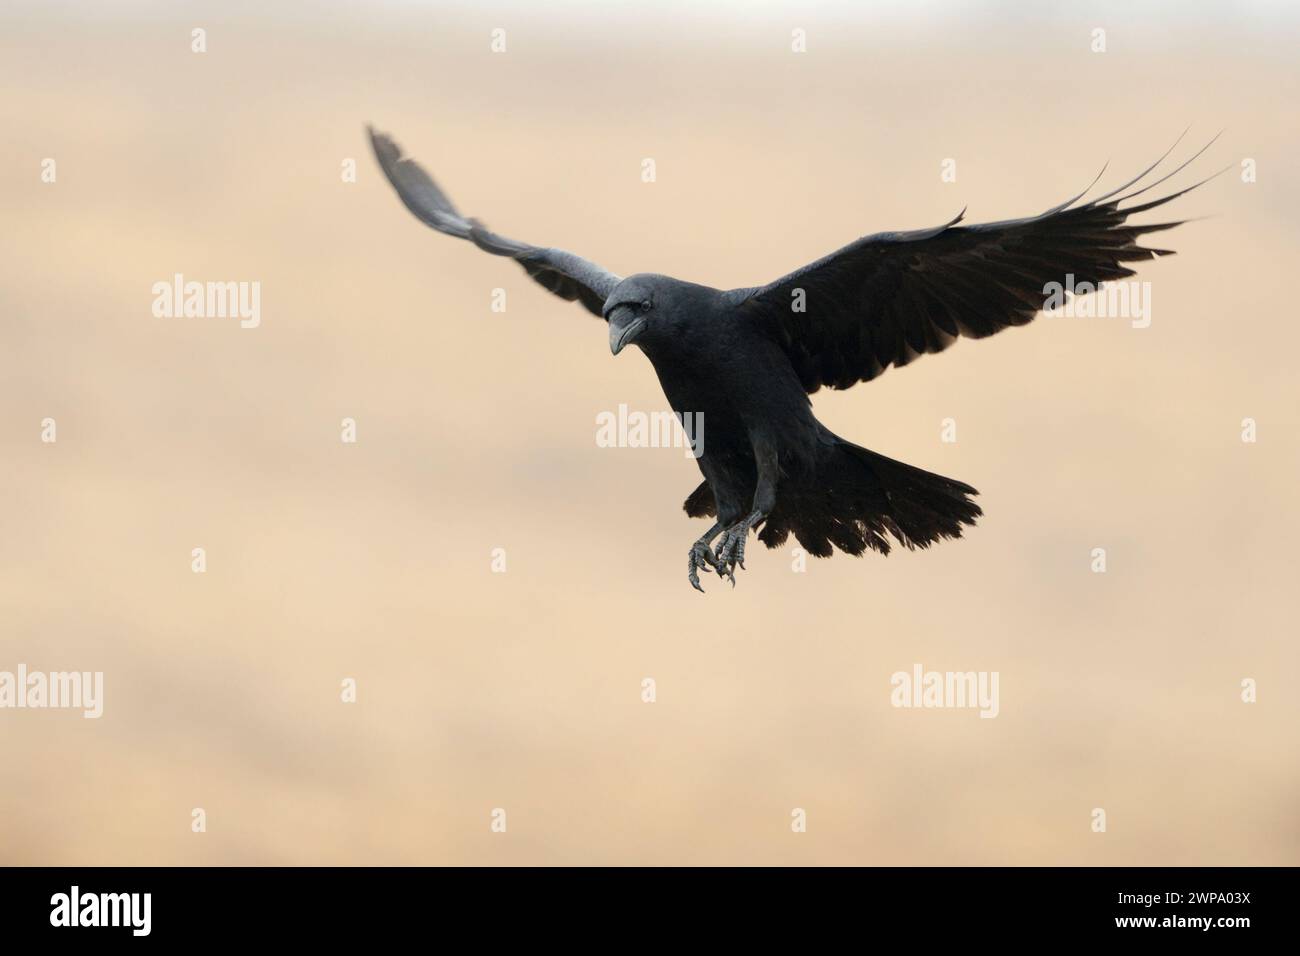 Corbeau commun ( Corvus corax ) volant avec de grandes ailes ouvertes devant un beau fond propre coloré, faune, Europe. Banque D'Images